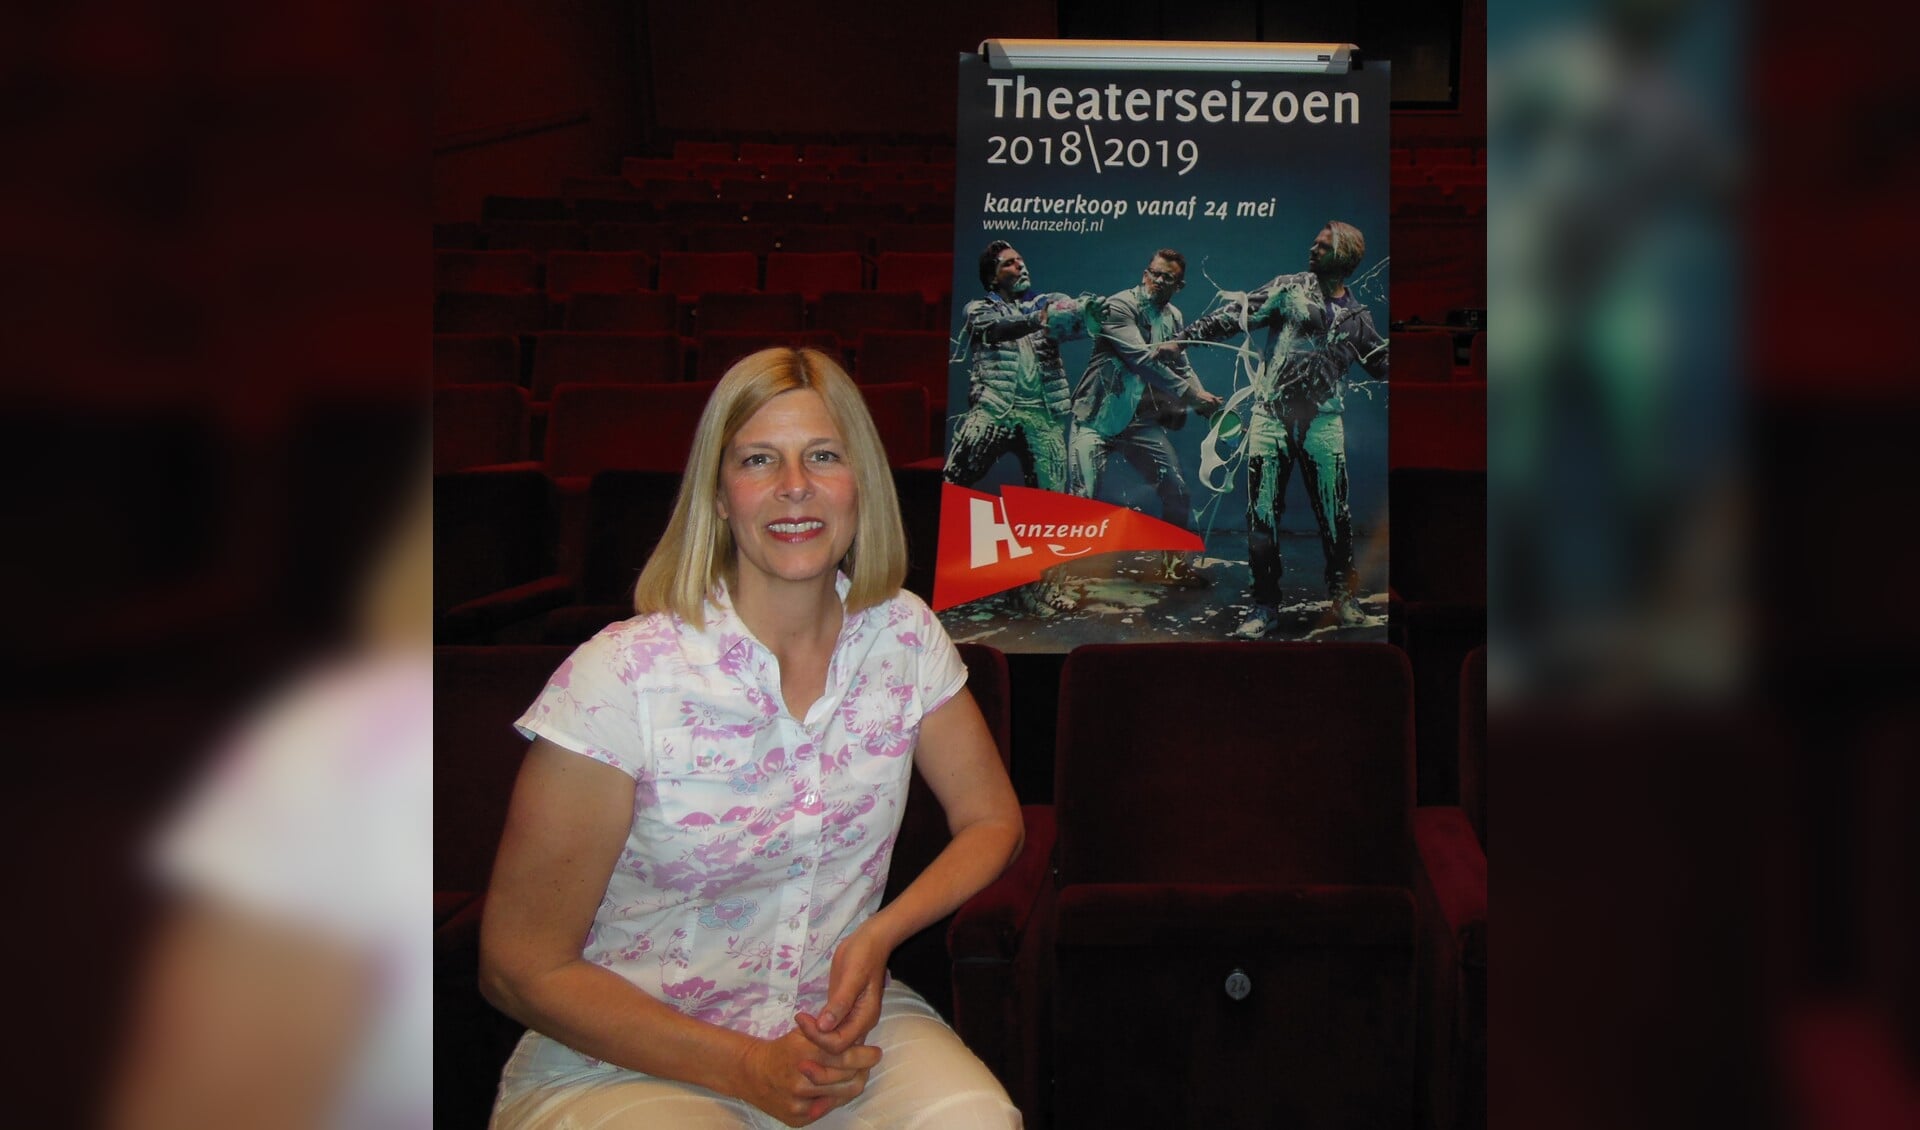 Directeur Mirjam van Tiel is trots op zowel de Hanzehof als het theaterprogramma voor het komende seizoen. 